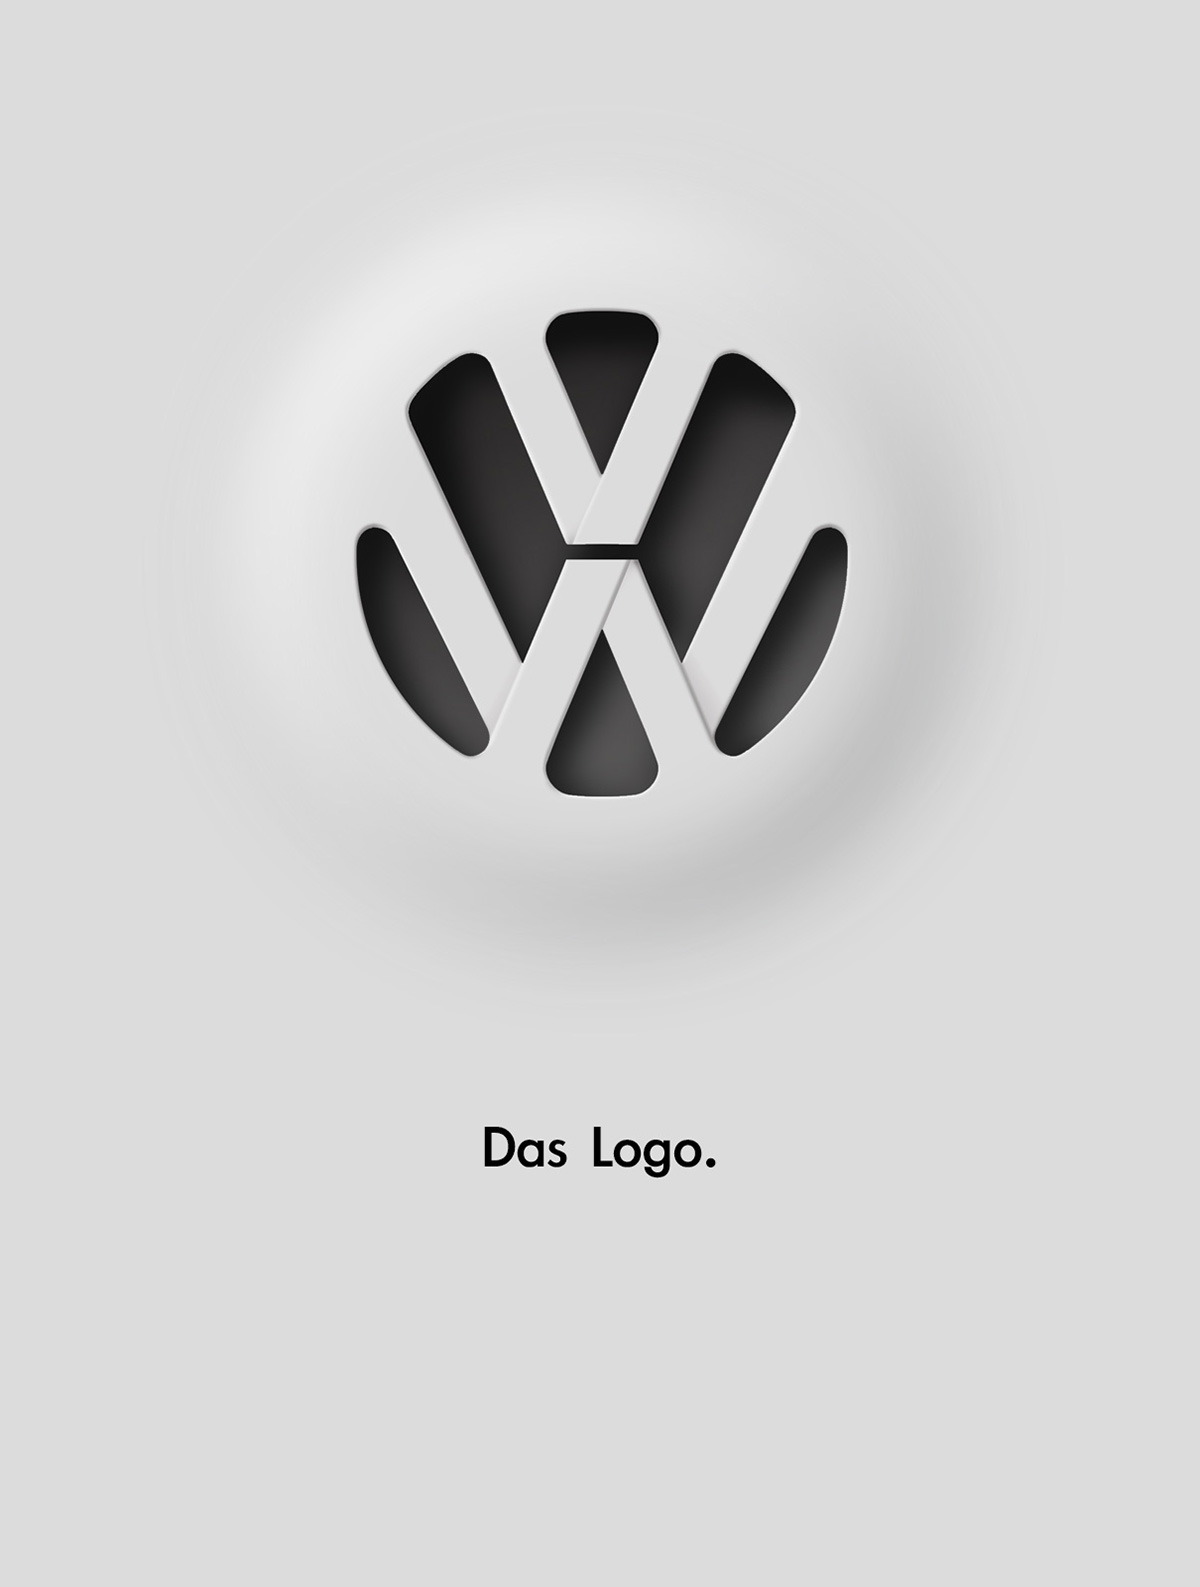 Logo VW 3D print poster VW rebranding logo